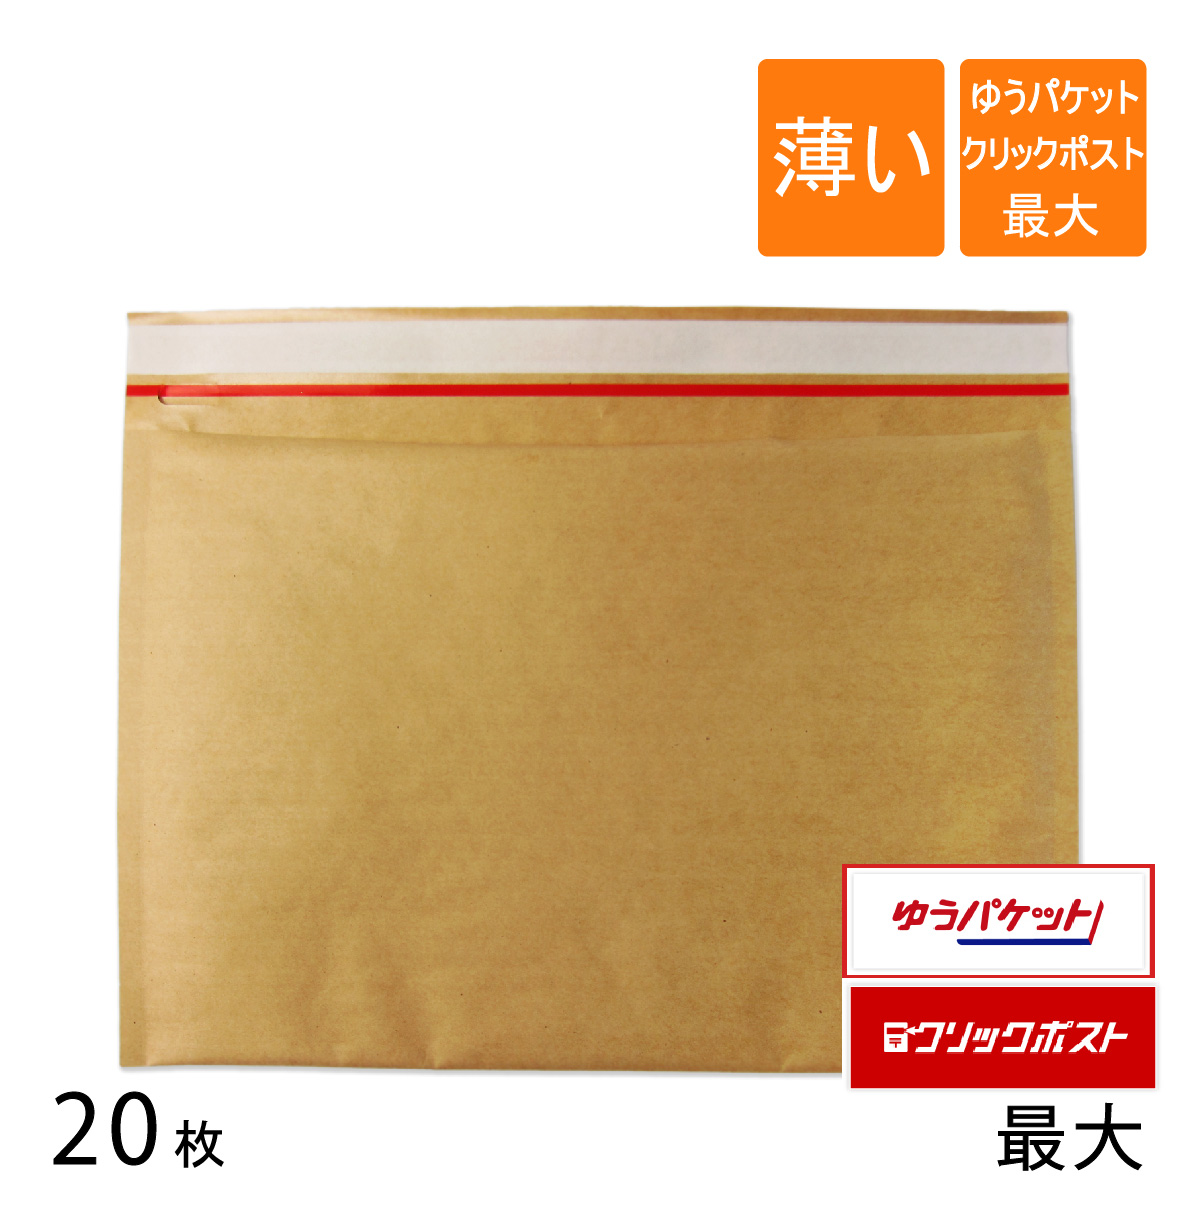 20枚 クリックポスト 超歓迎された 日本未発売 ゆうパケット最大 クッション封筒 薄いクッション封筒 直輸入で激安 内寸315×225mm クラフト茶